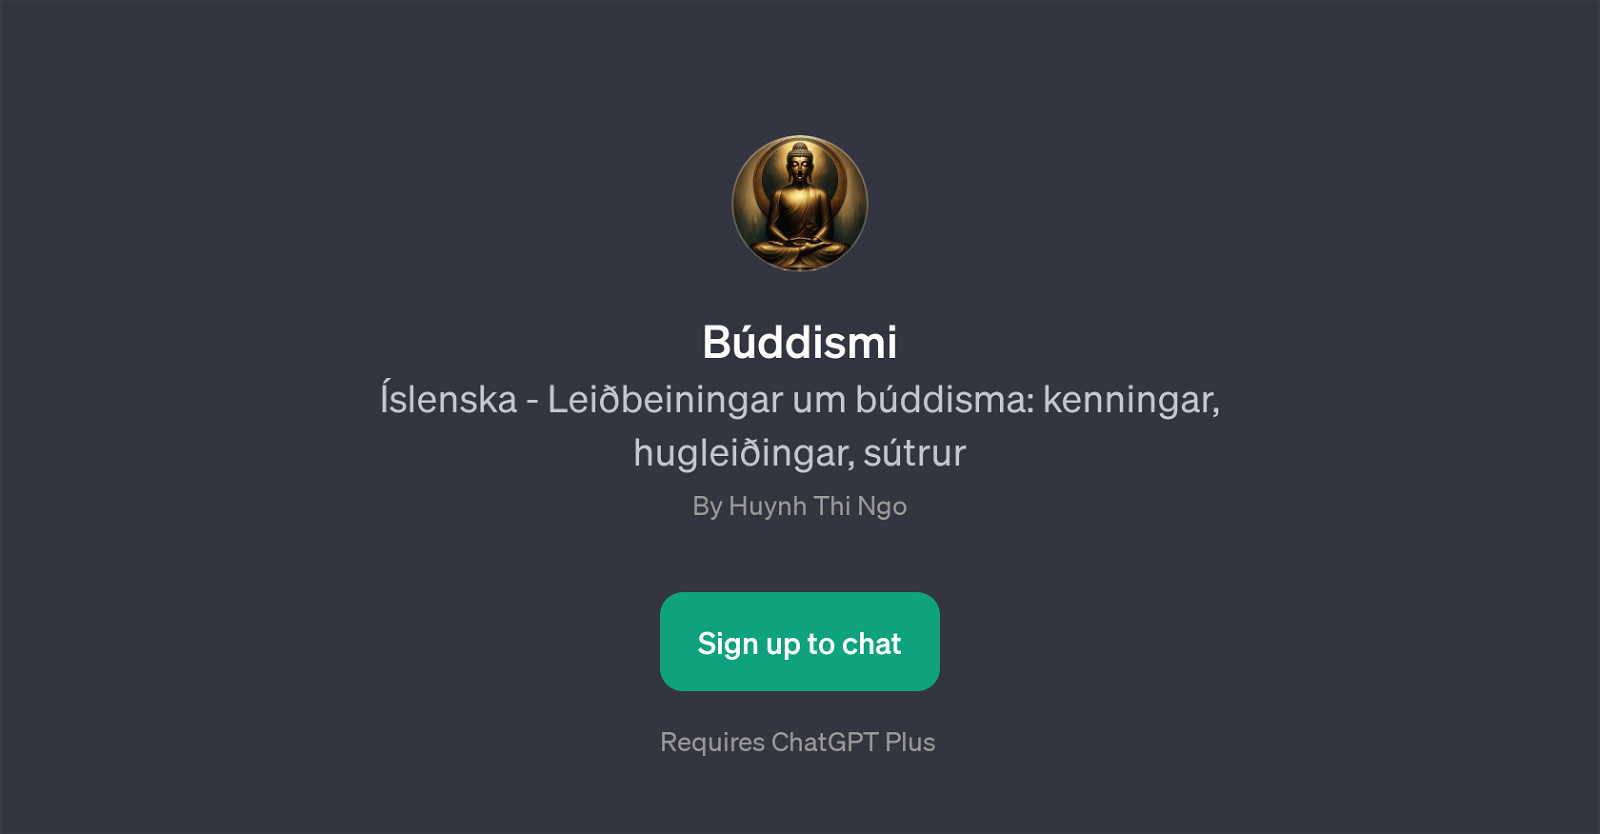 Bddismi website